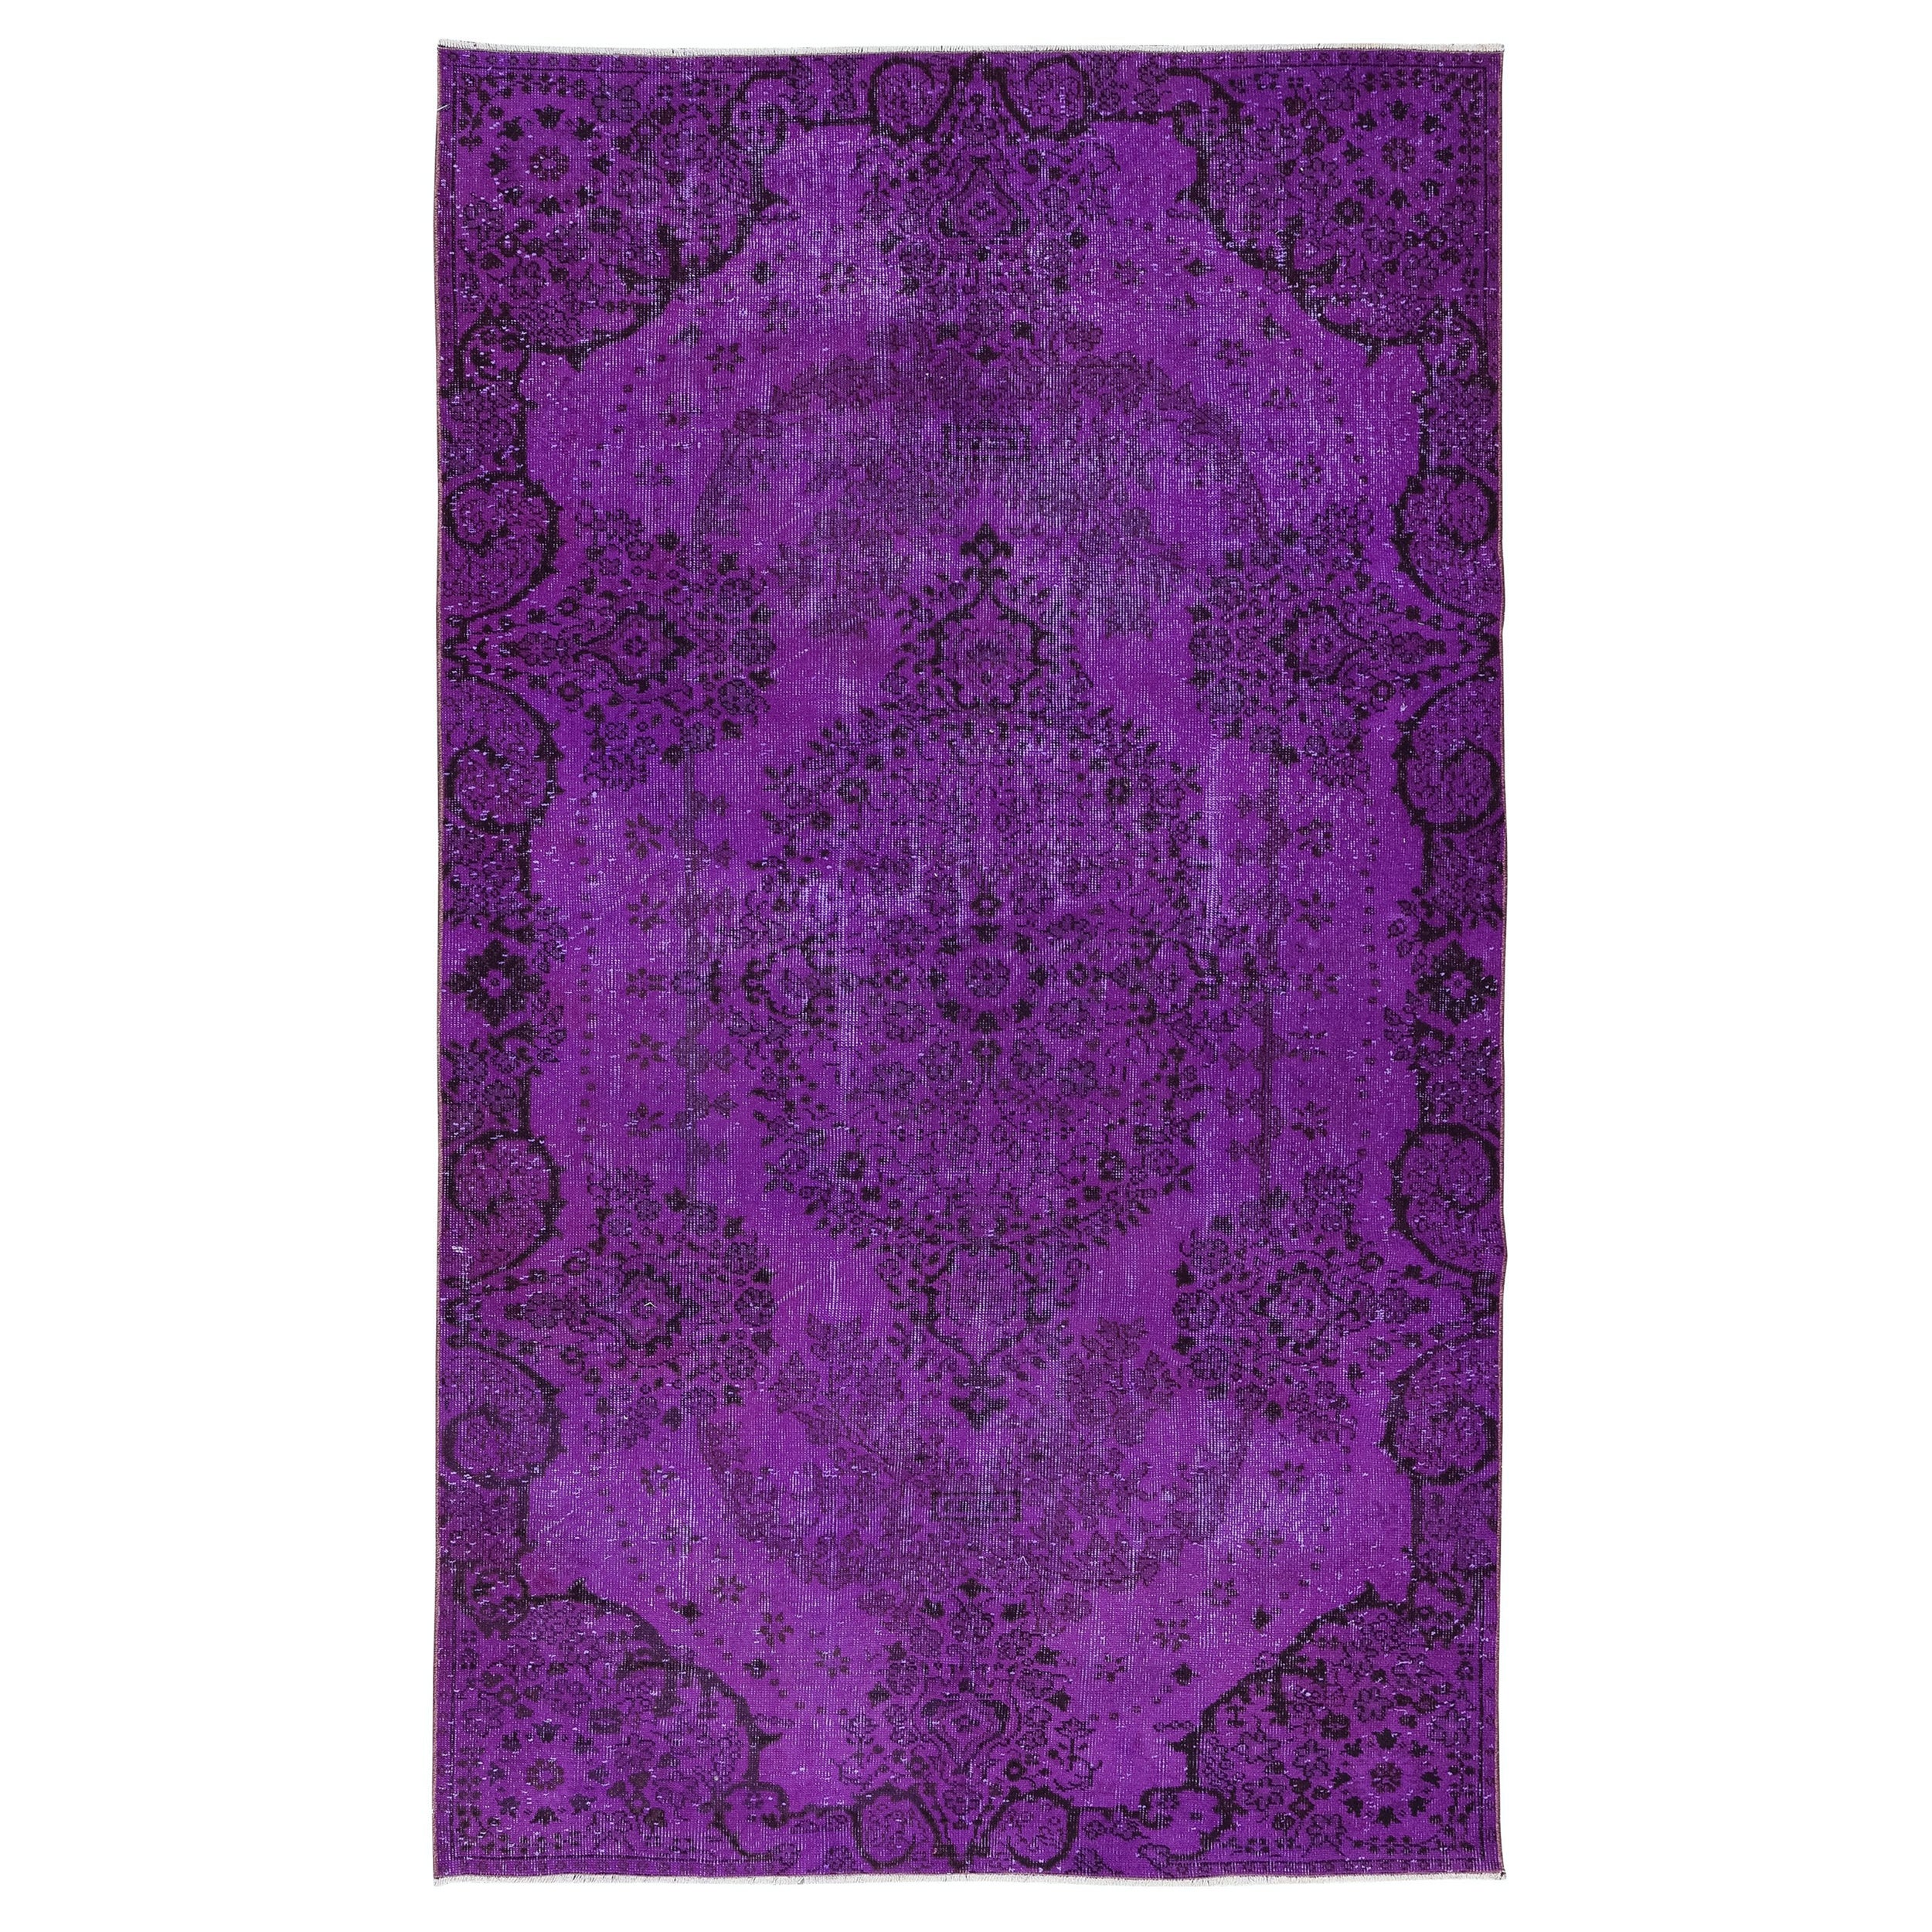 5.7x9,3 Ft Rustikaler lila handgefertigter Teppich in Zimmergröße, upcycelter türkischer Teppich